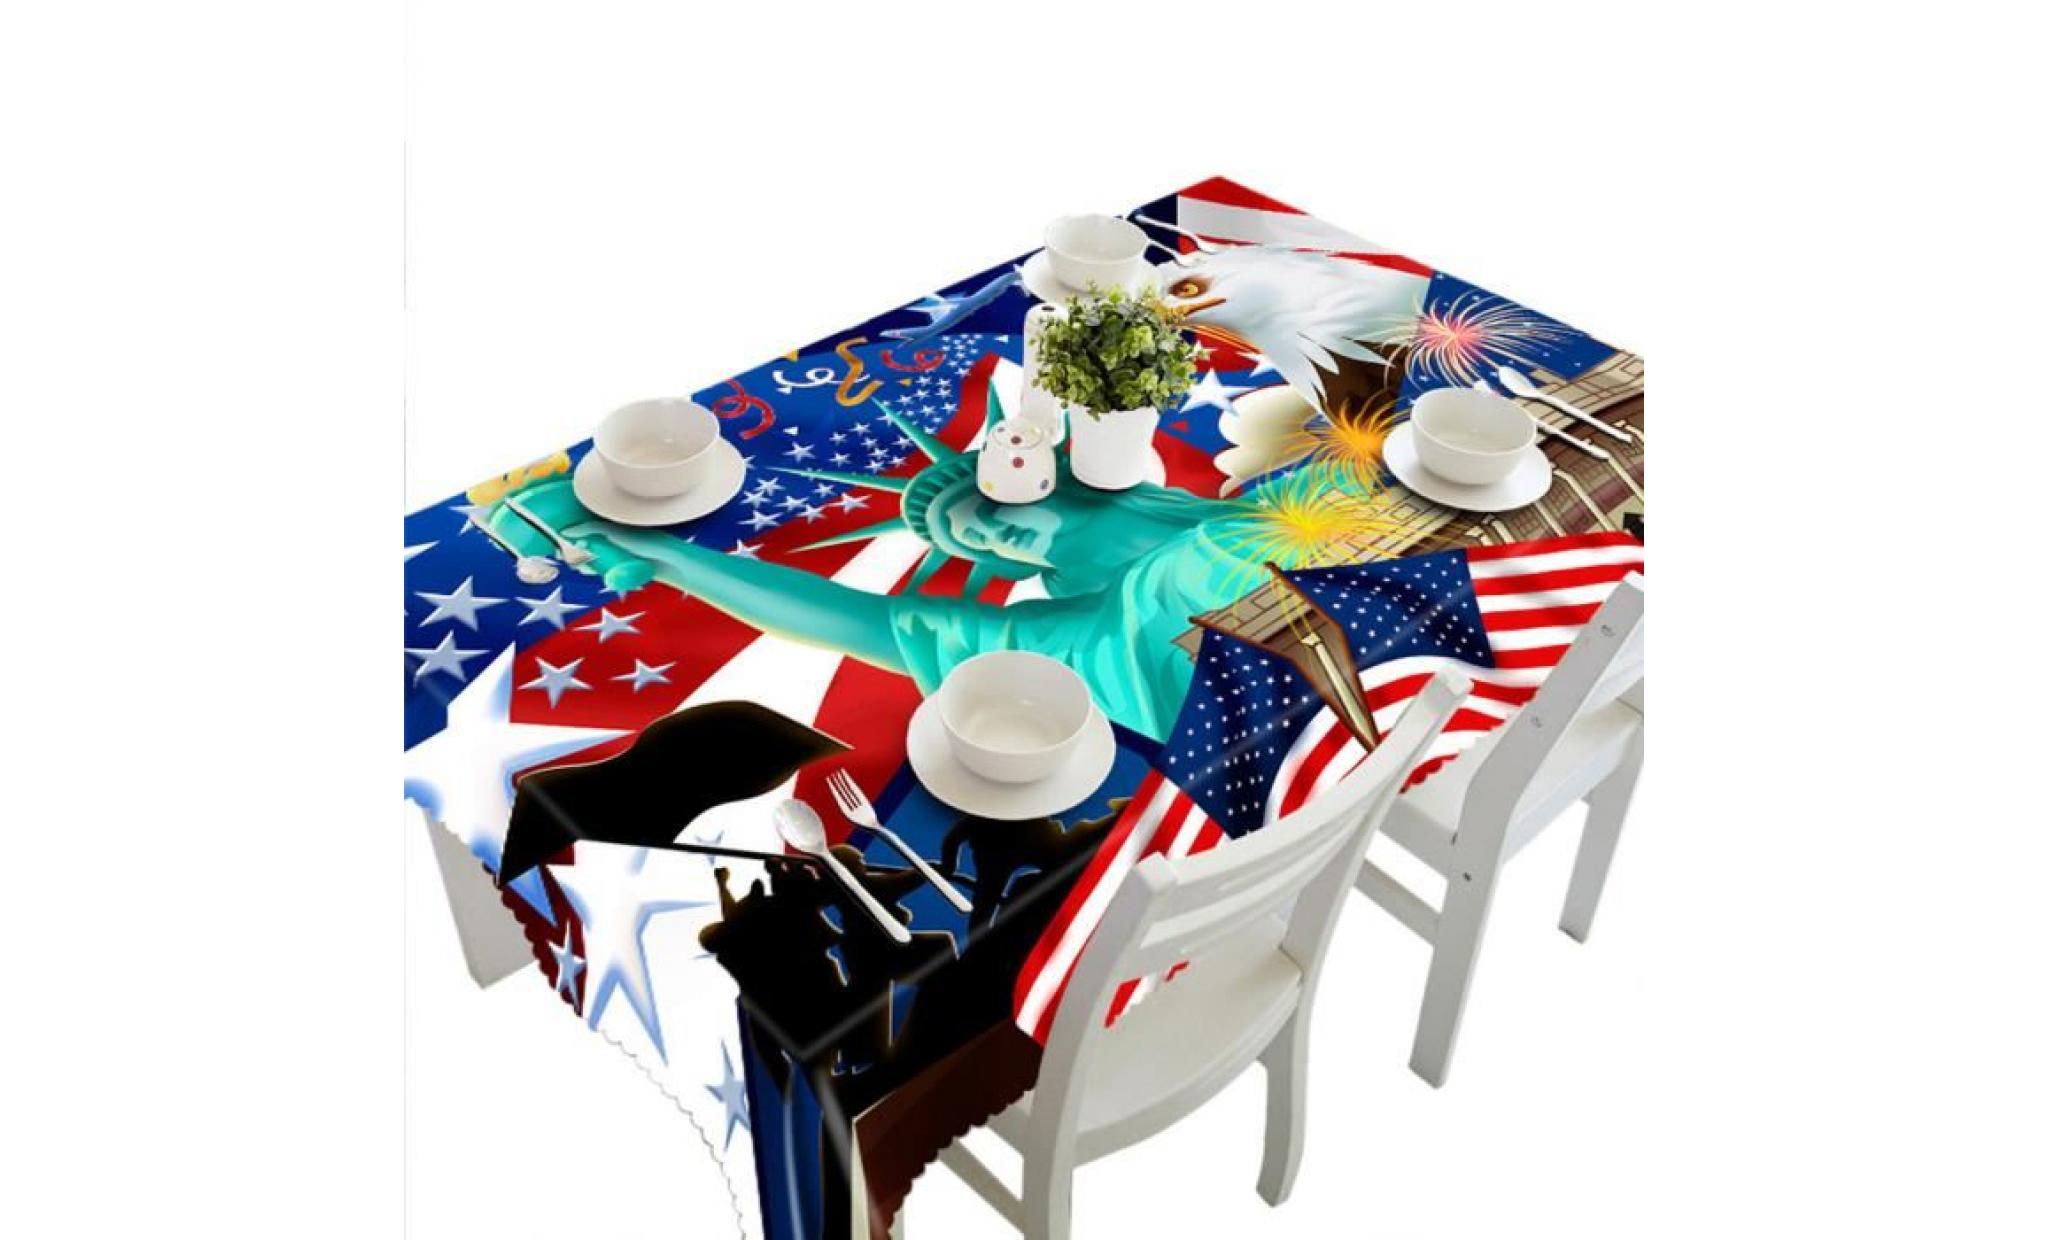 3d multi table à manger fonctionnelle tissu pour picnic party b nappe_ccx122